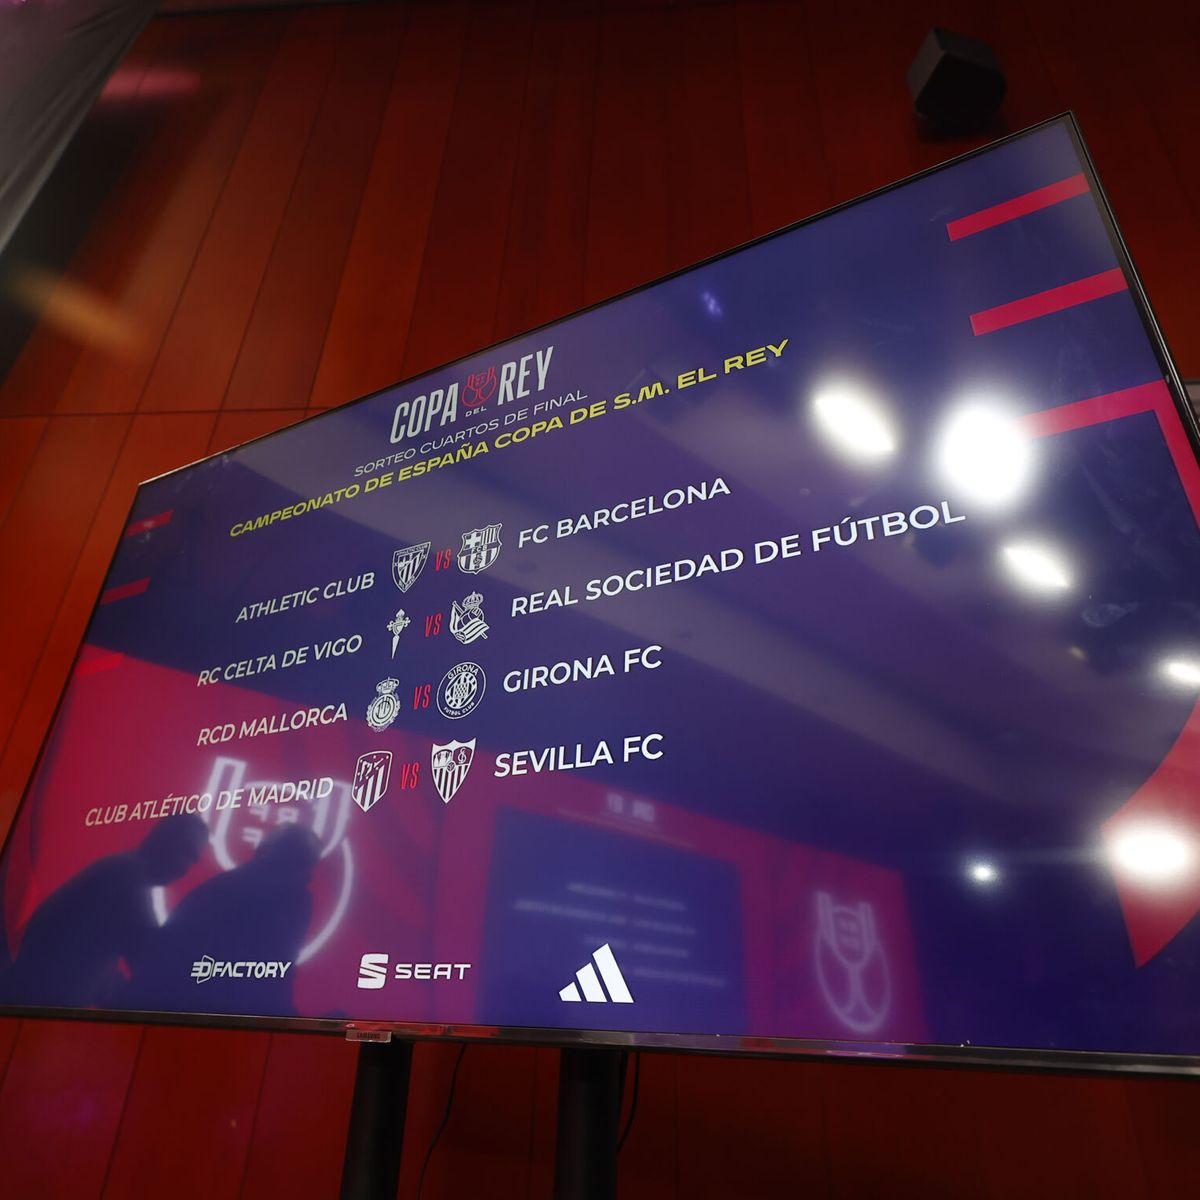 Celta de Vigo - Real Sociedad de la Copa del Rey: Horario y dónde